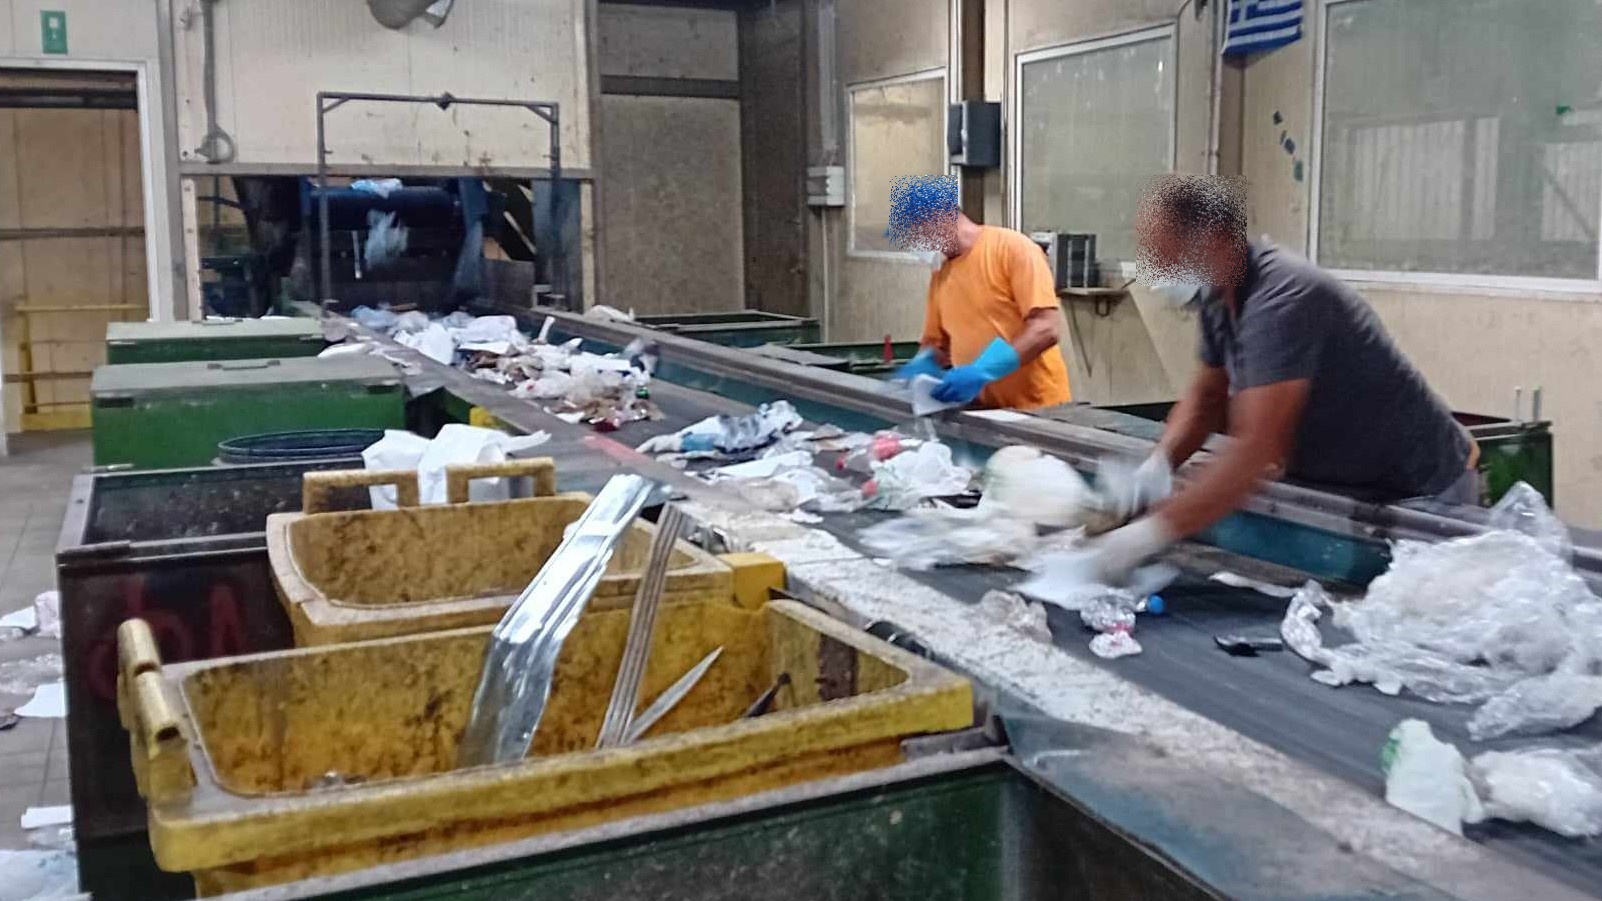 Φρίκη στα Χανιά: Από το Ρέθυμνο η μεταφορά του διαμελισμένου σώματος που εντοπίστηκε στο εργοστάσιο της ΔΕΔΙΣΑ